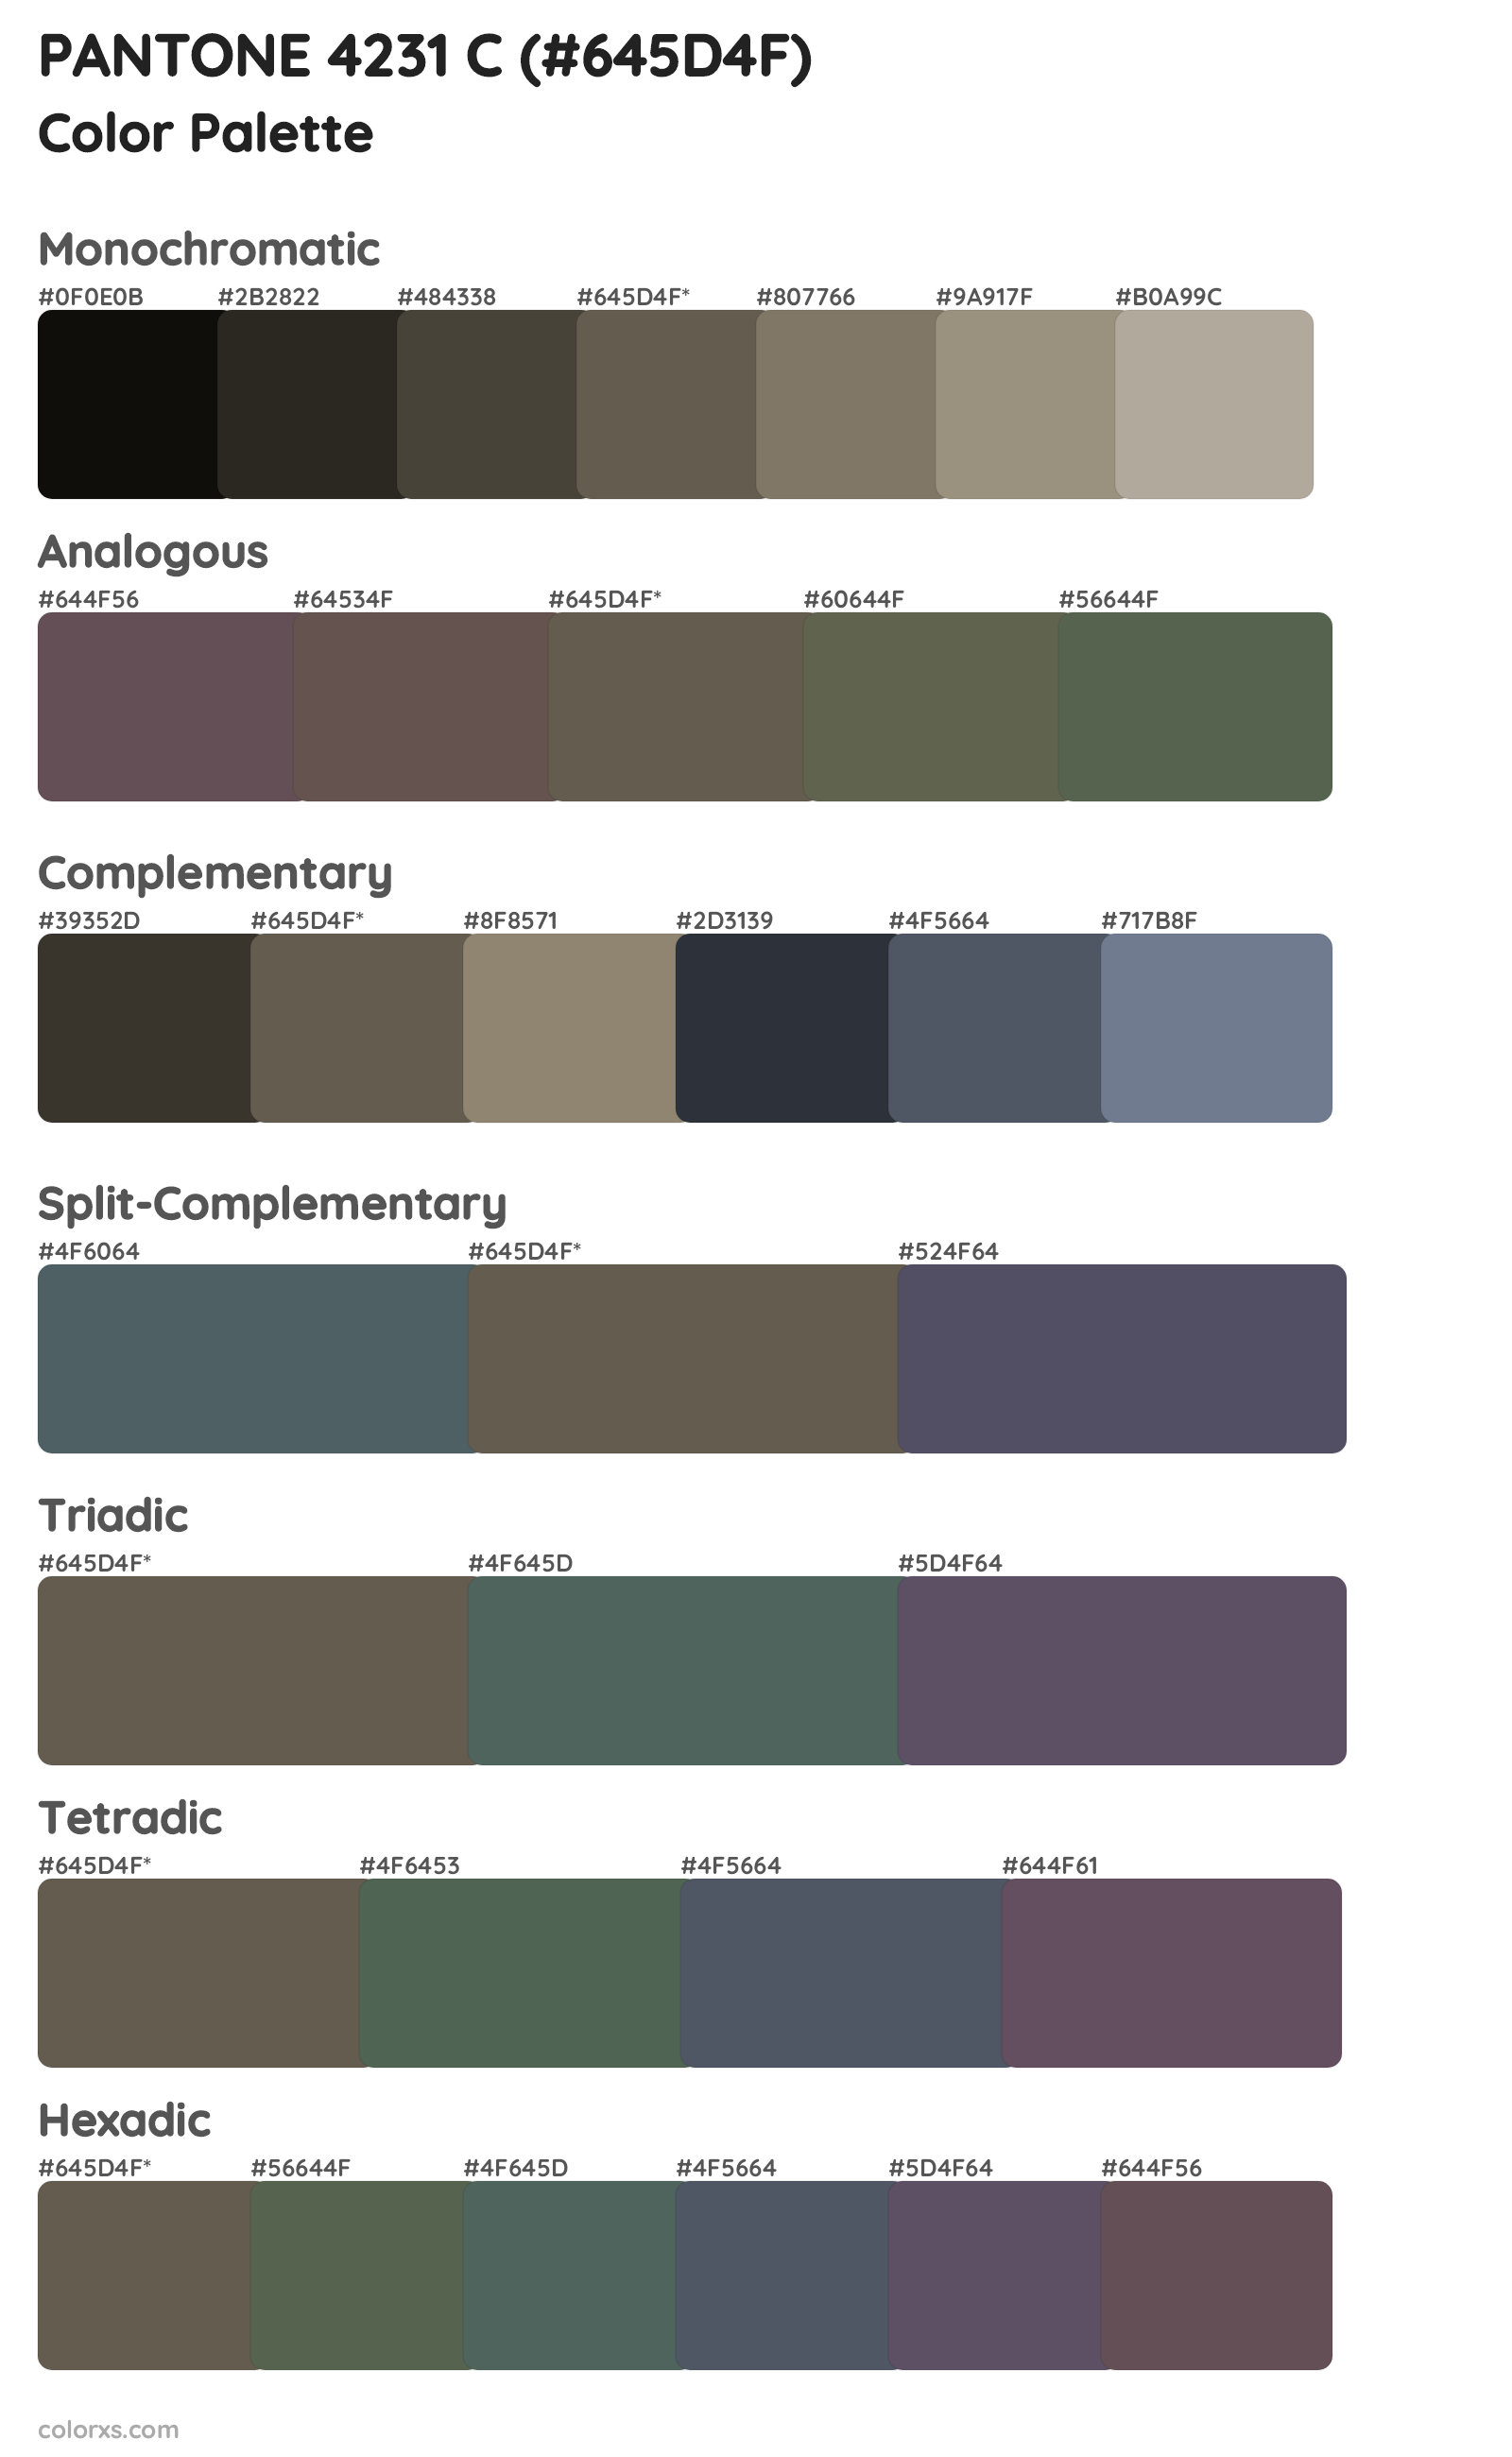 PANTONE 4231 C Color Scheme Palettes